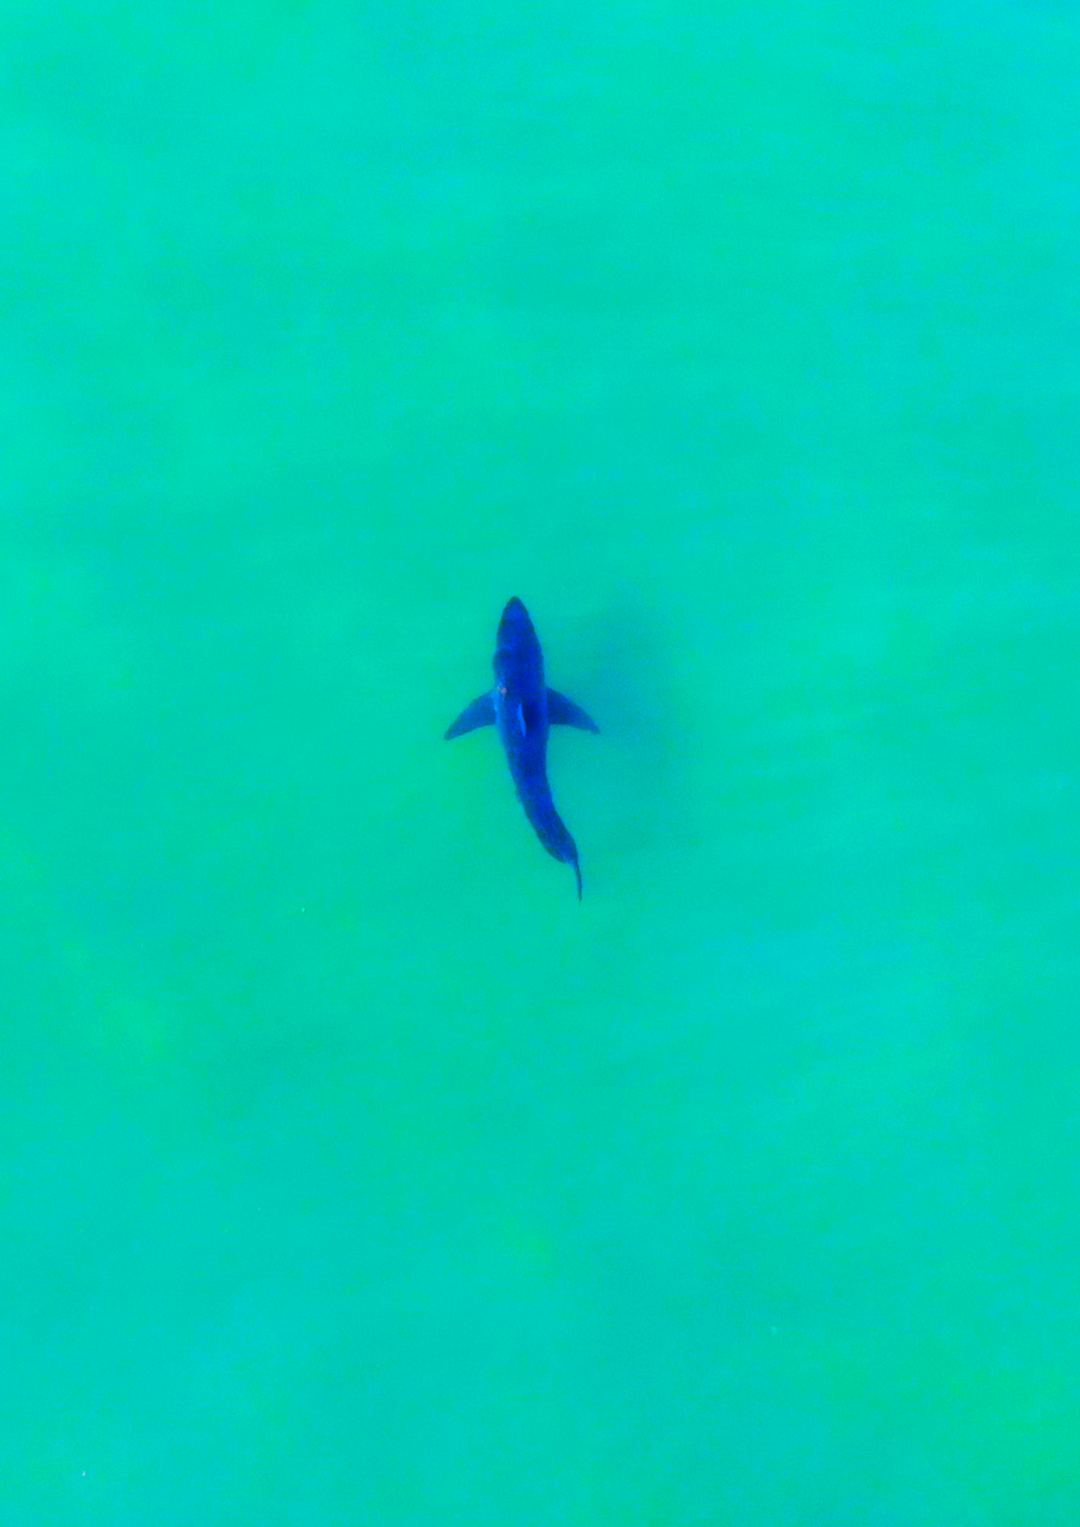 Great White Shark from drone "white shark ocean"